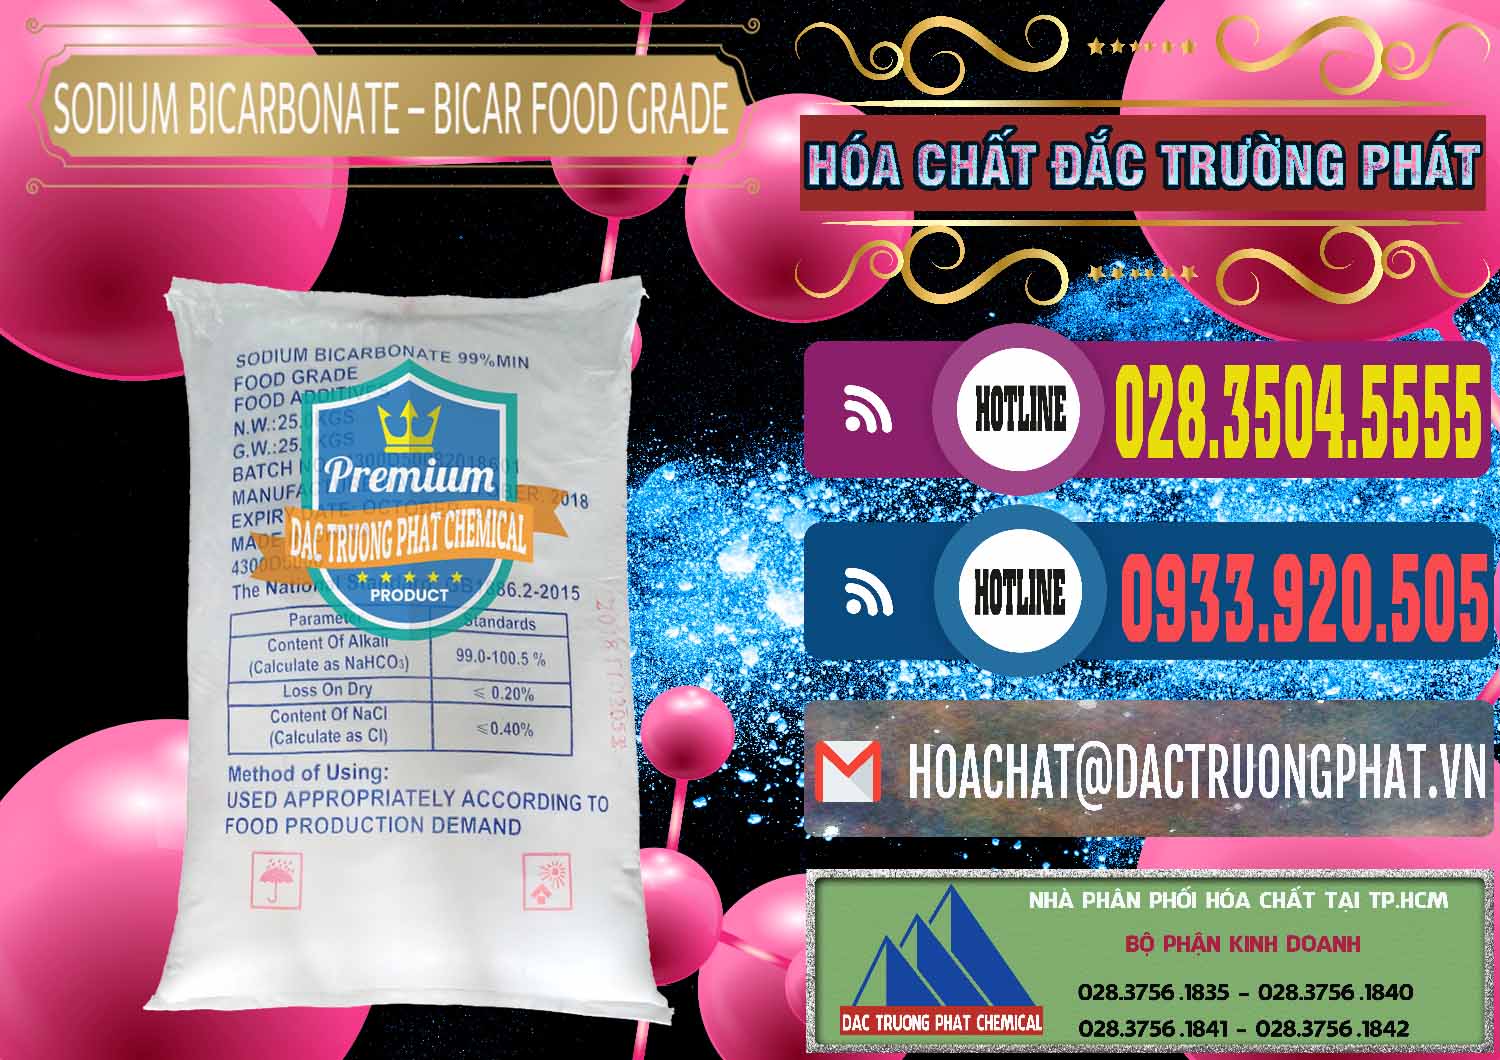 Cty chuyên bán & phân phối Sodium Bicarbonate – Bicar NaHCO3 Food Grade Trung Quốc China - 0138 - Nơi chuyên phân phối - kinh doanh hóa chất tại TP.HCM - muabanhoachat.com.vn